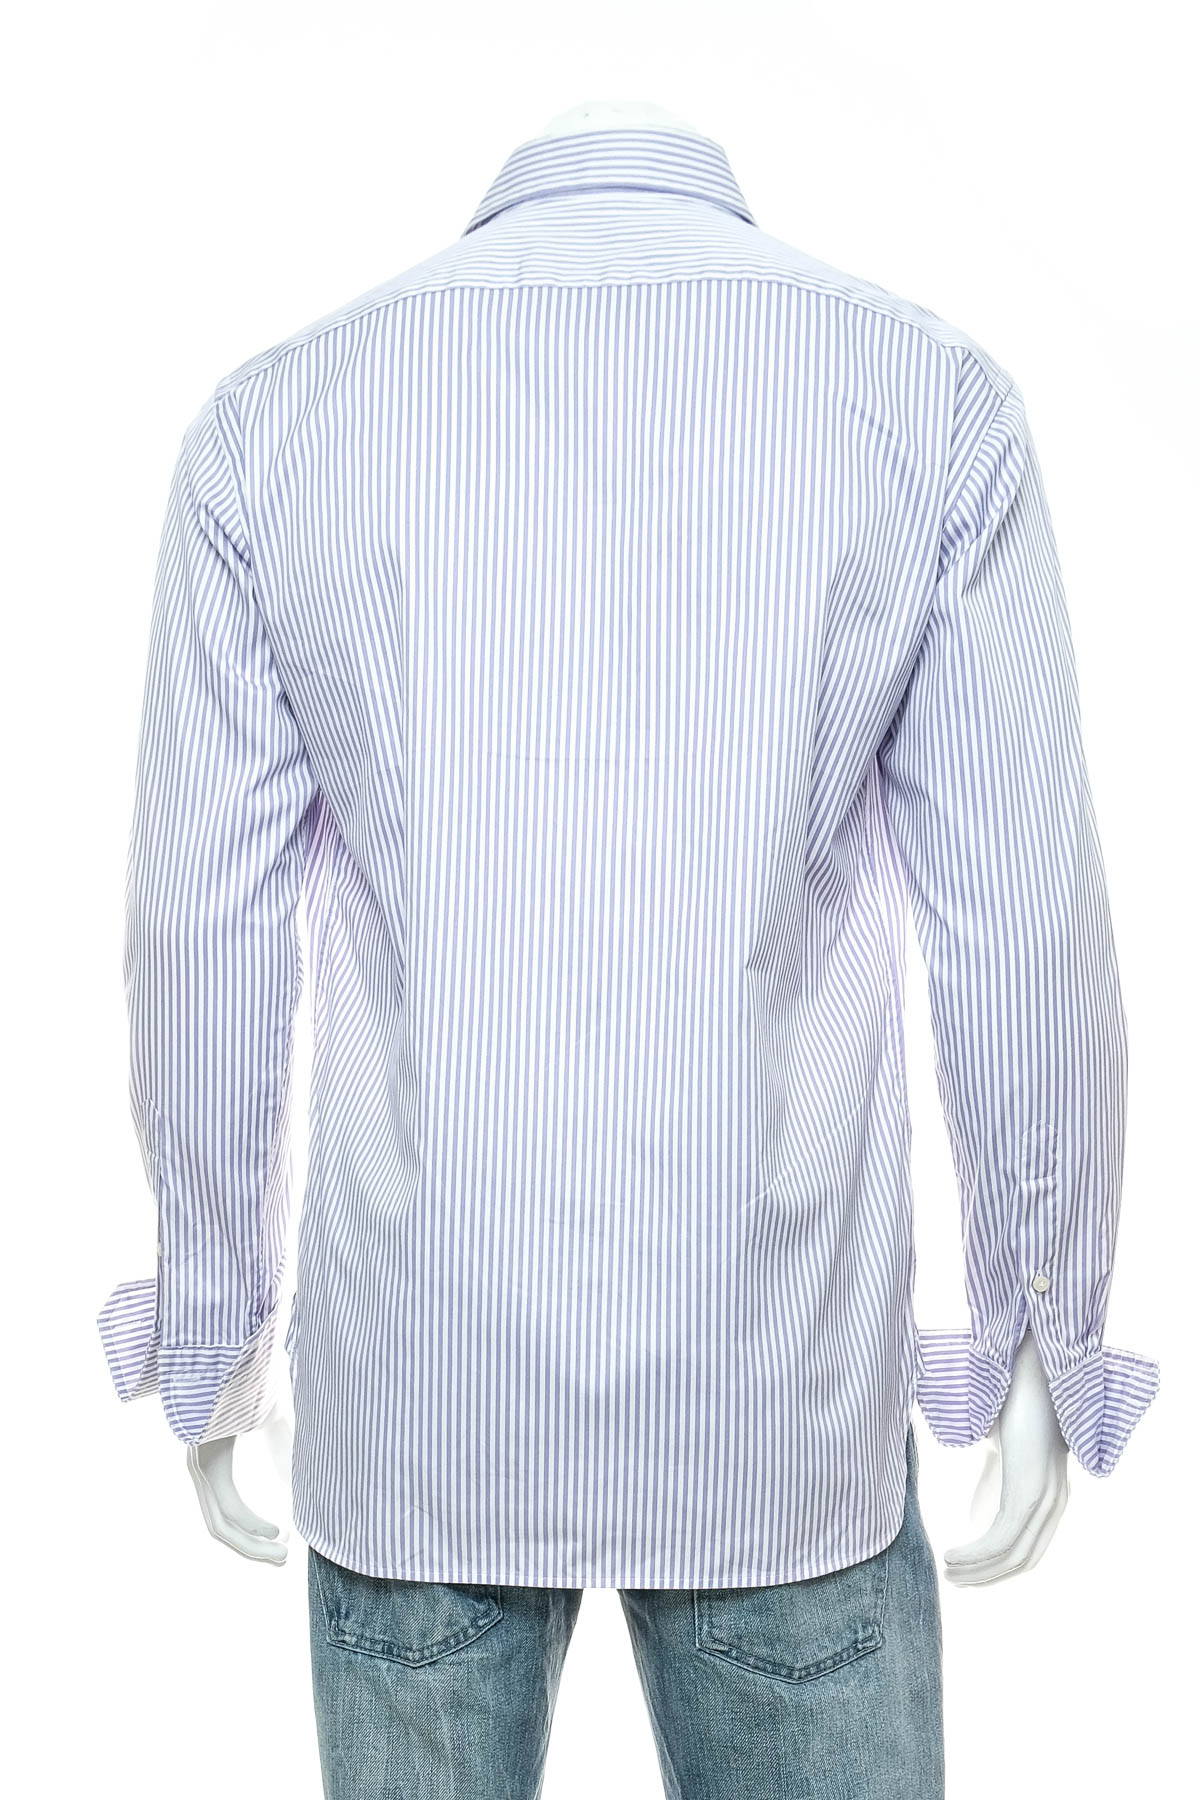 Ανδρικό πουκάμισο - PAUL ROSEN - 1